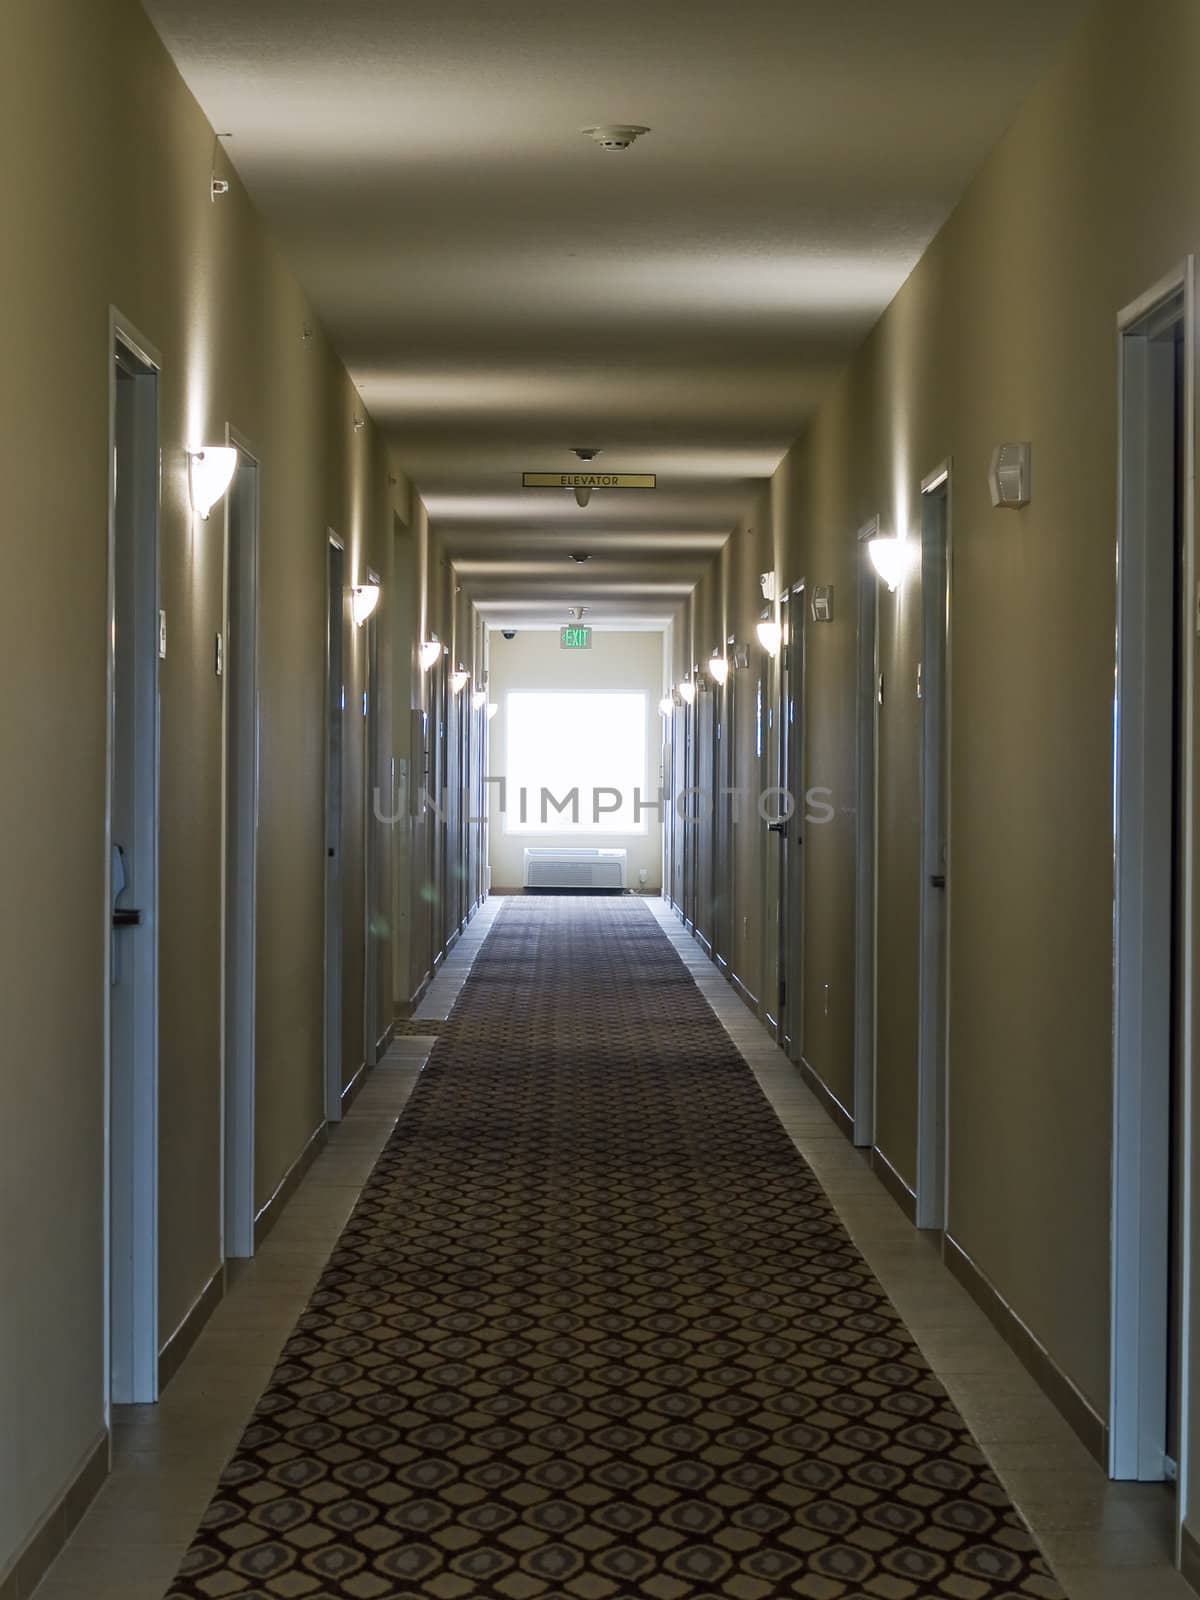 Empty hotel corridor in monochrome sepia color tone